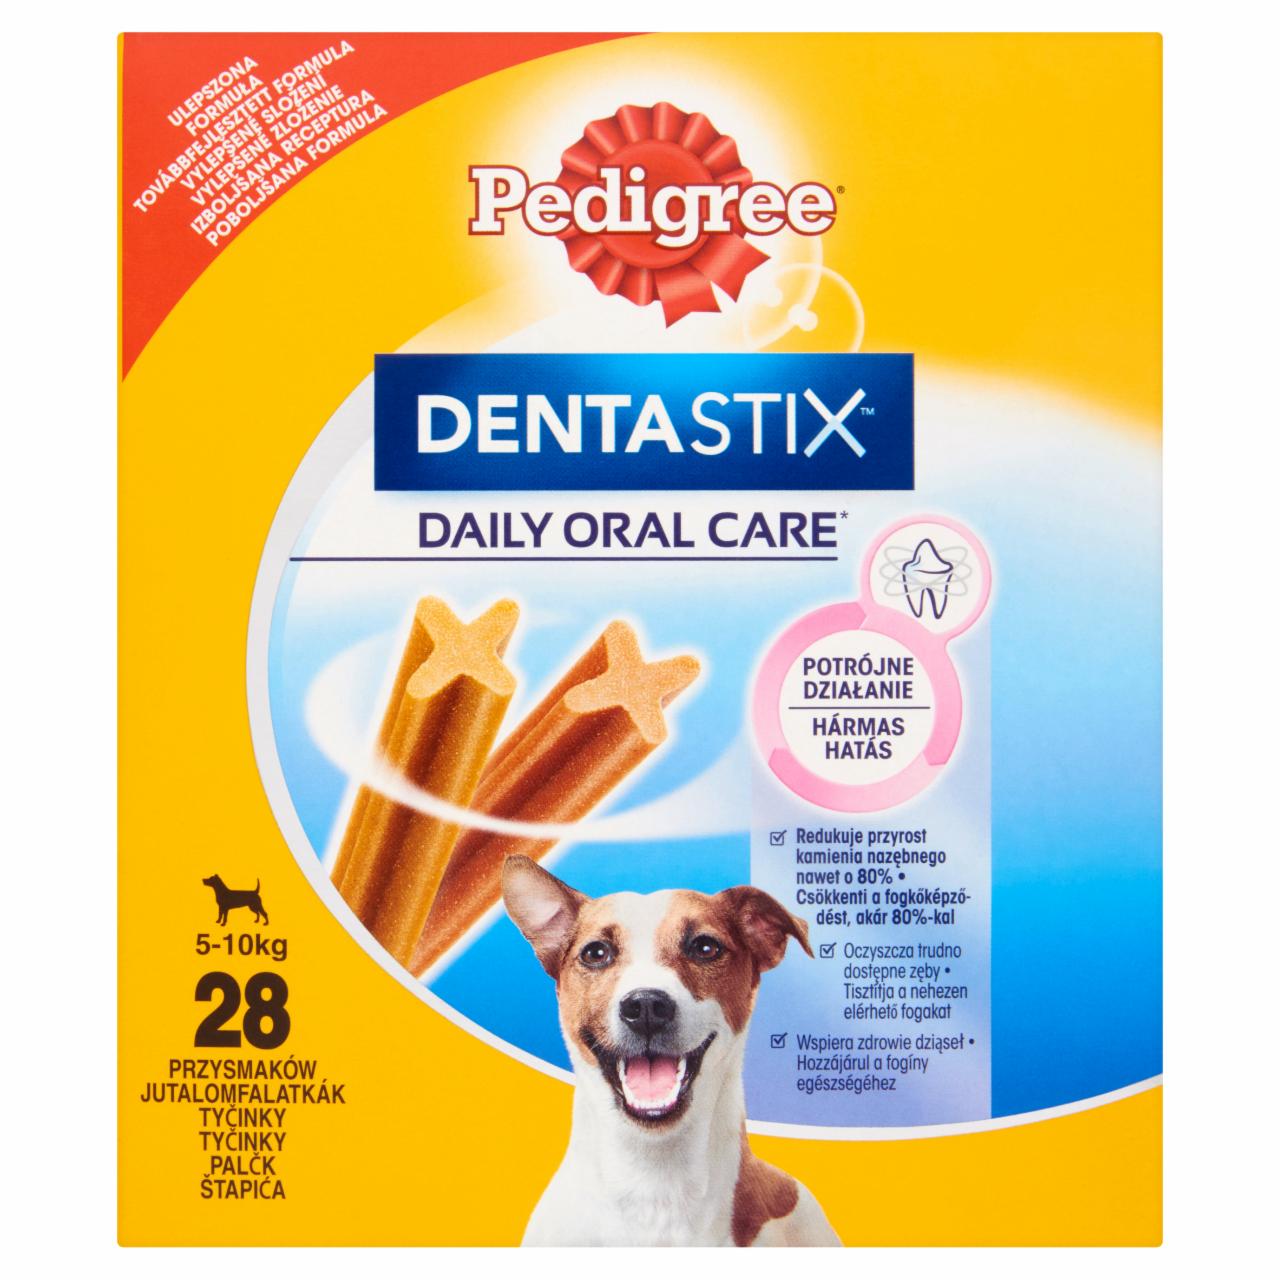 Képek - Pedigree DentaStix jutalomfalat 5-10 kg-os kutyáknak 28 db 440 g